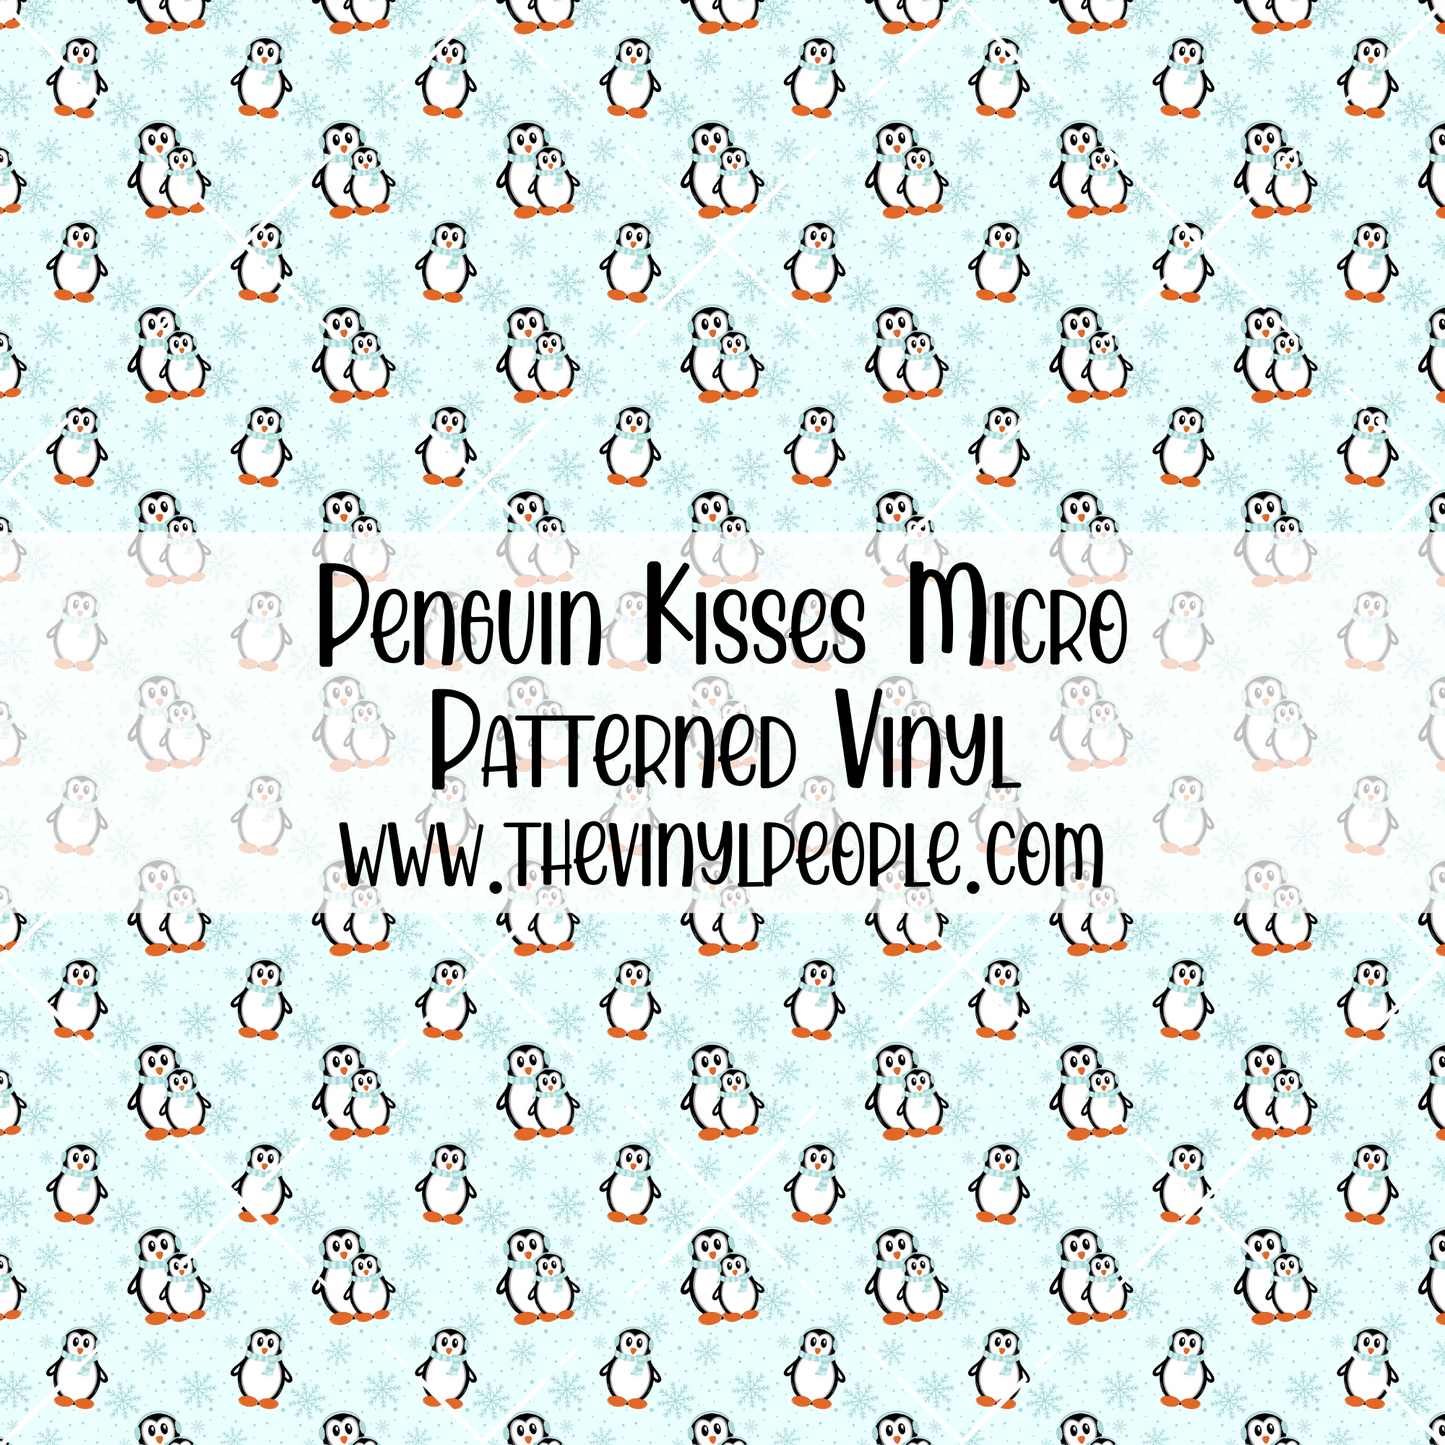 Penguin Kisses Patterned Vinyl